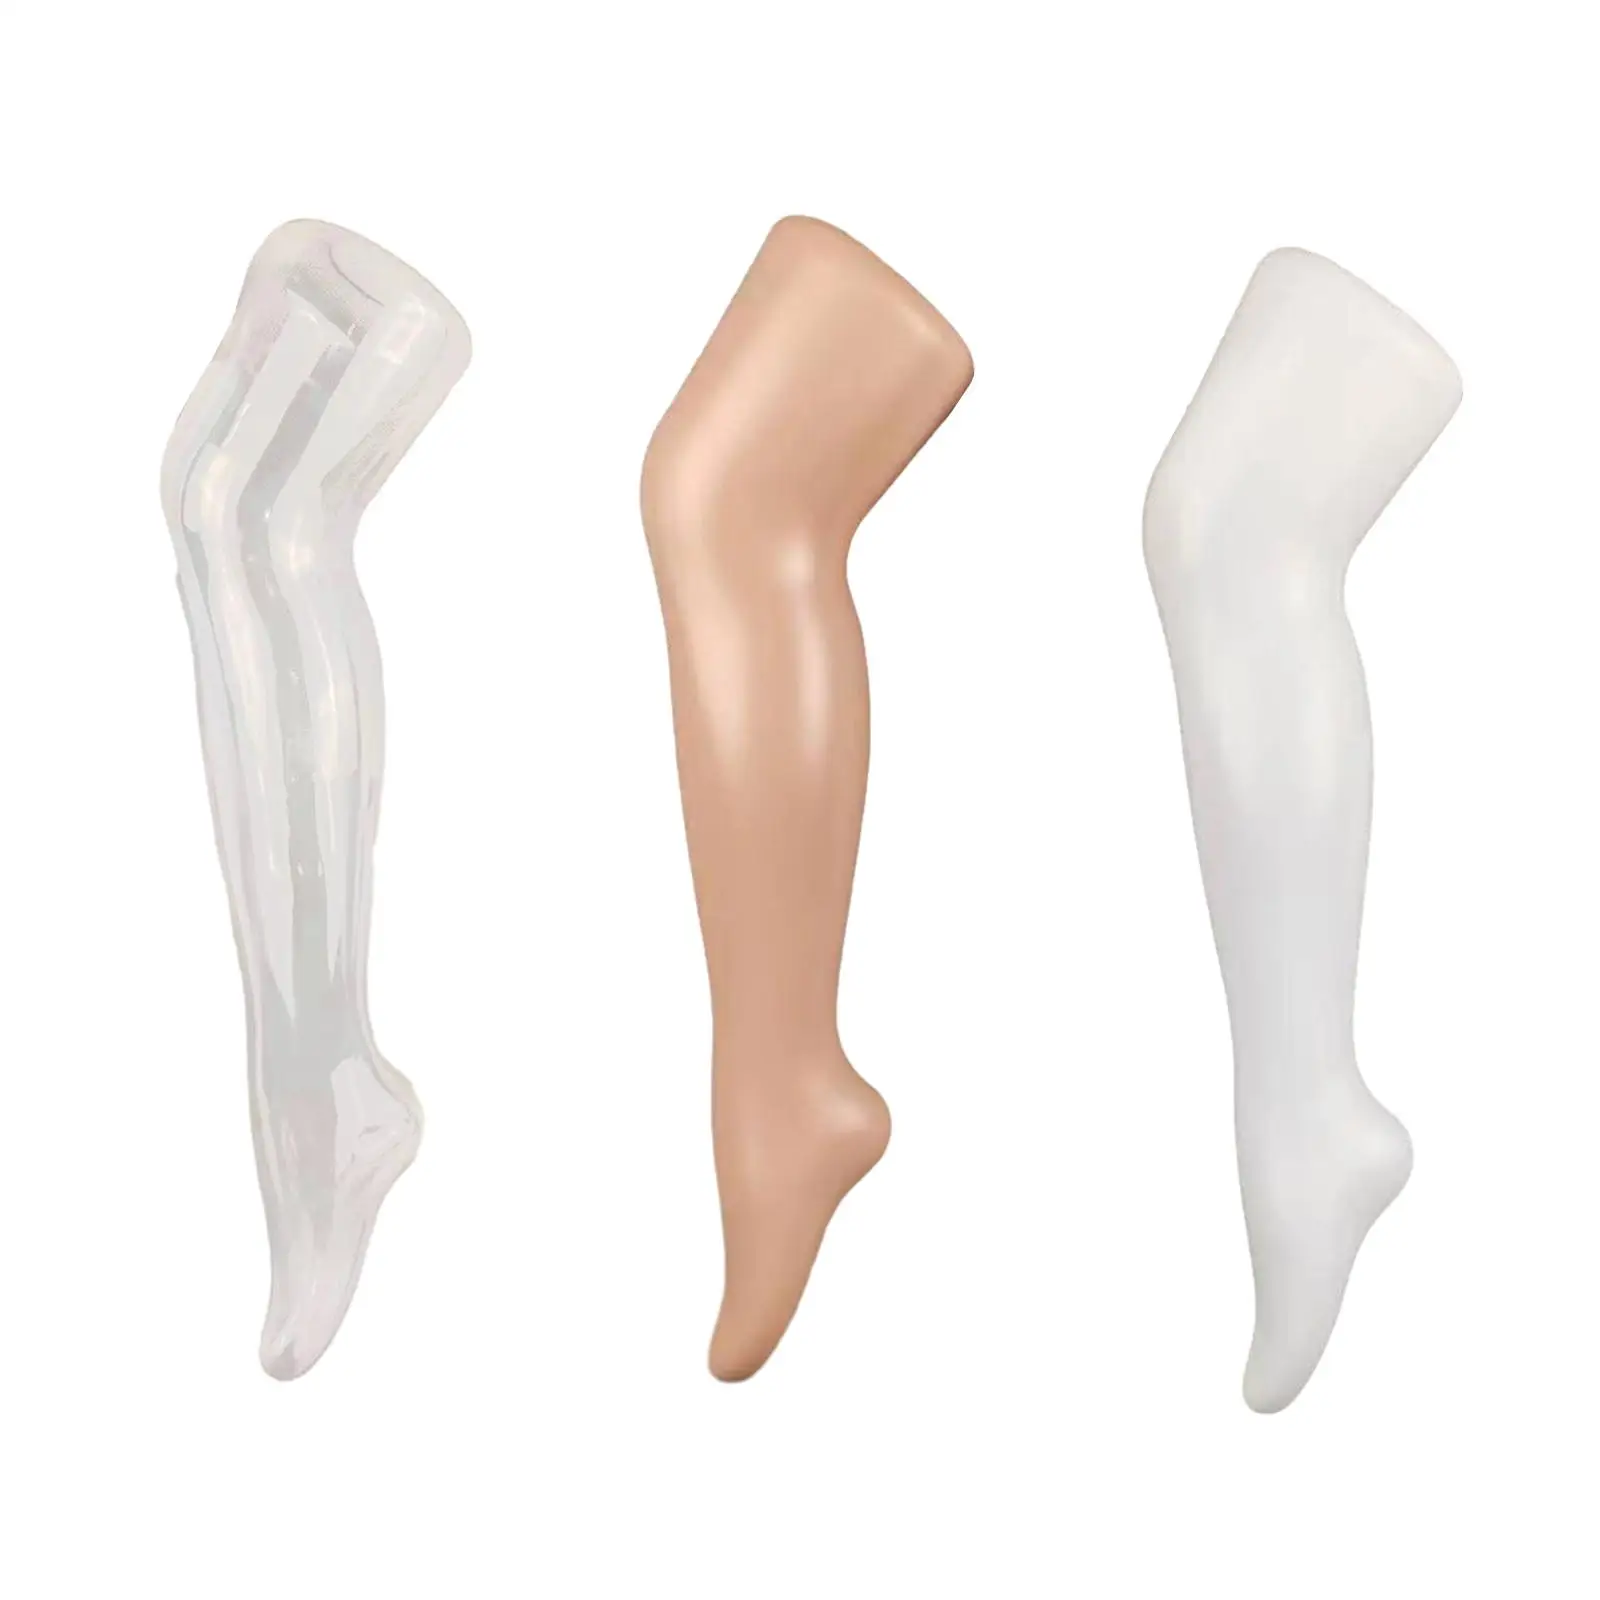 Child Mannequin Leg Sock Display Model Manikin for Retail Shops Showcase